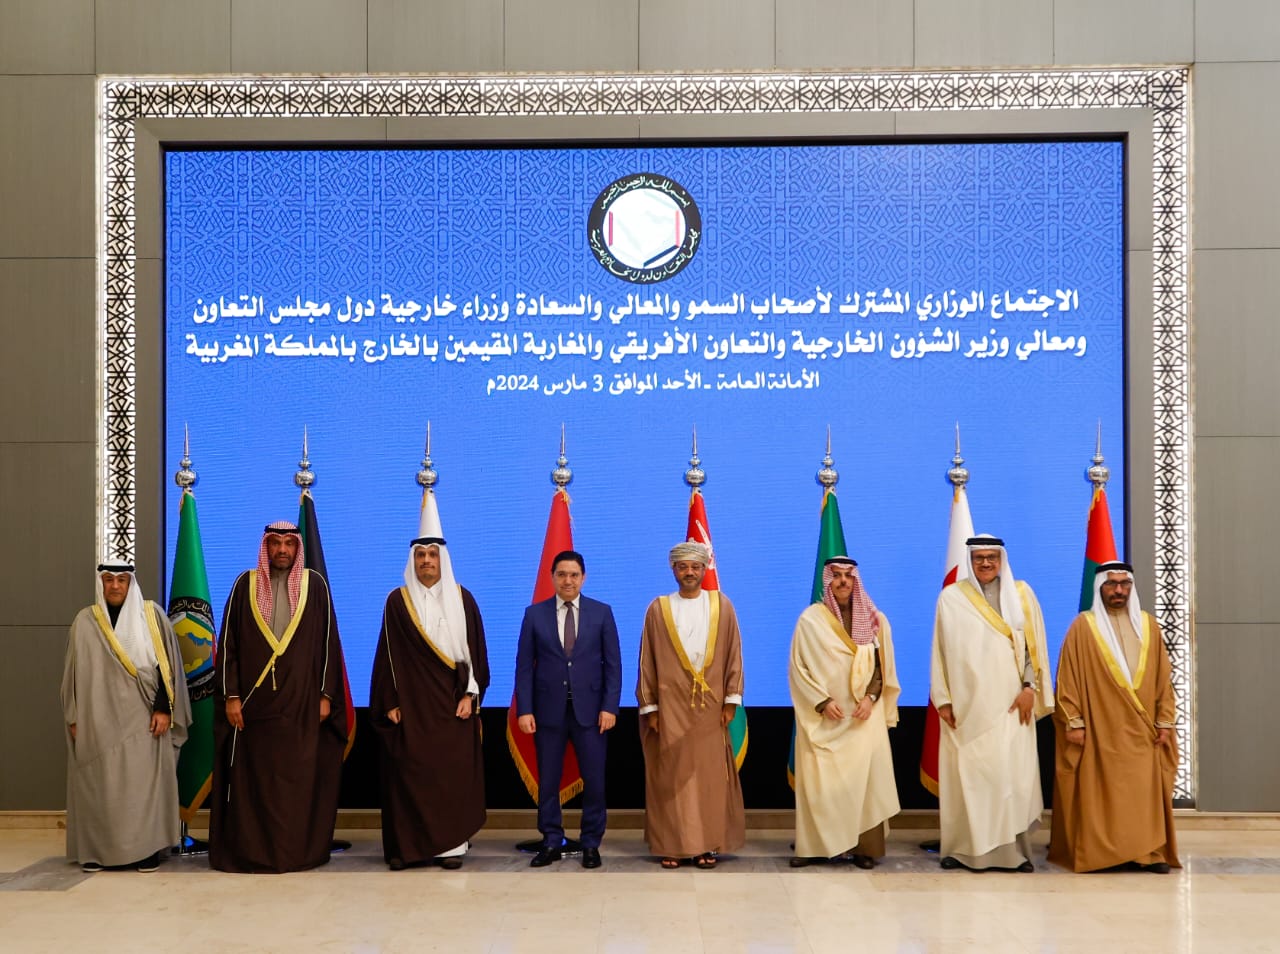 دول مجلس التعاون الخليجي تؤكد مواقفها الثابتة المؤيدة لمغربية الصحراء.